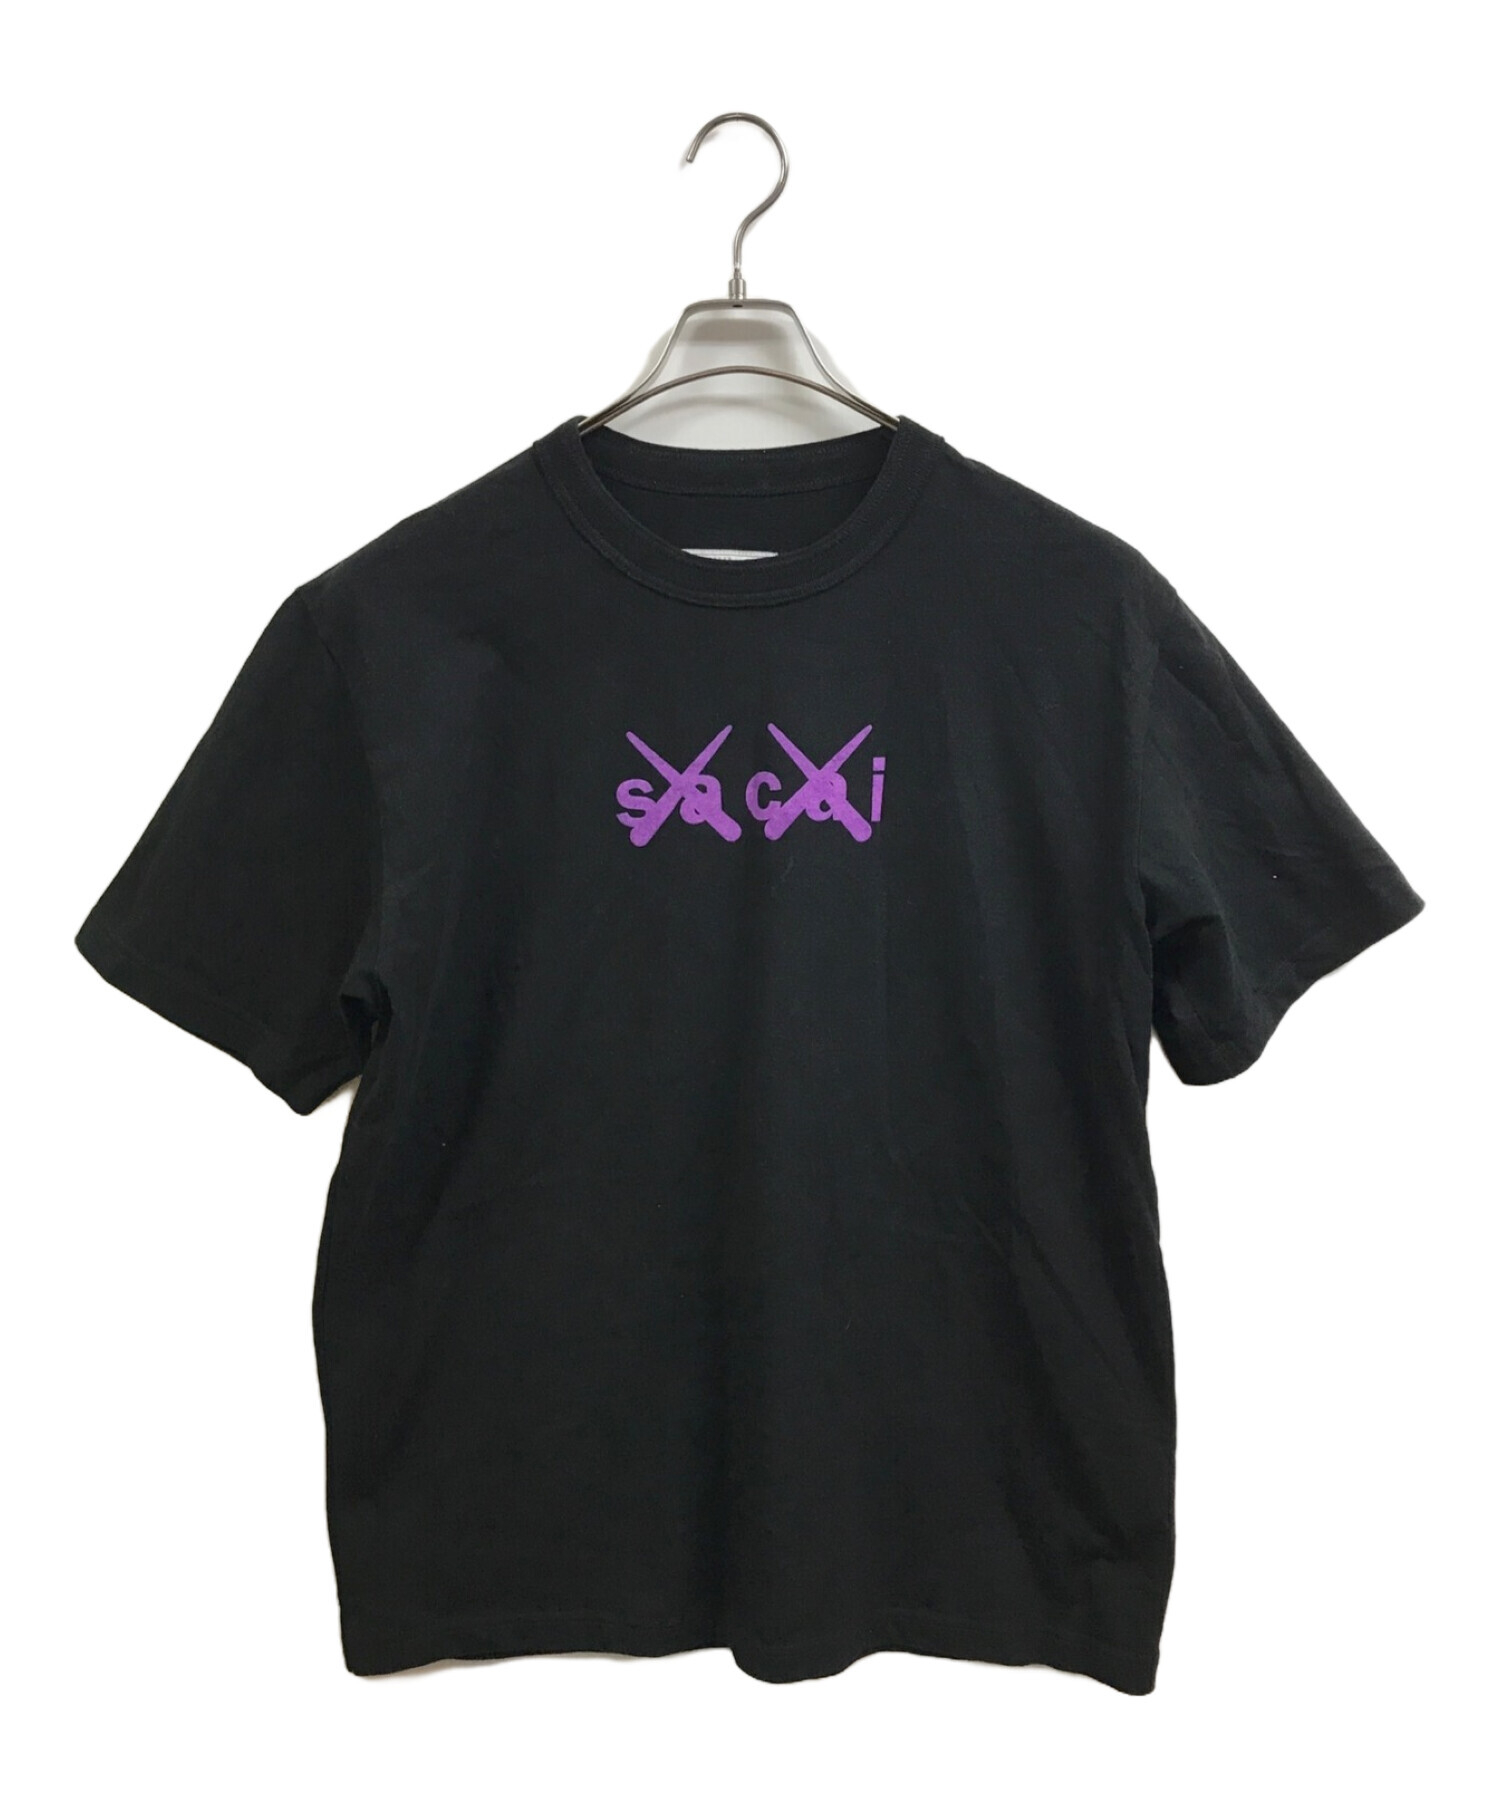 sacai x KAWS Print T-shirt BLACK サイズ4ダブルタップス